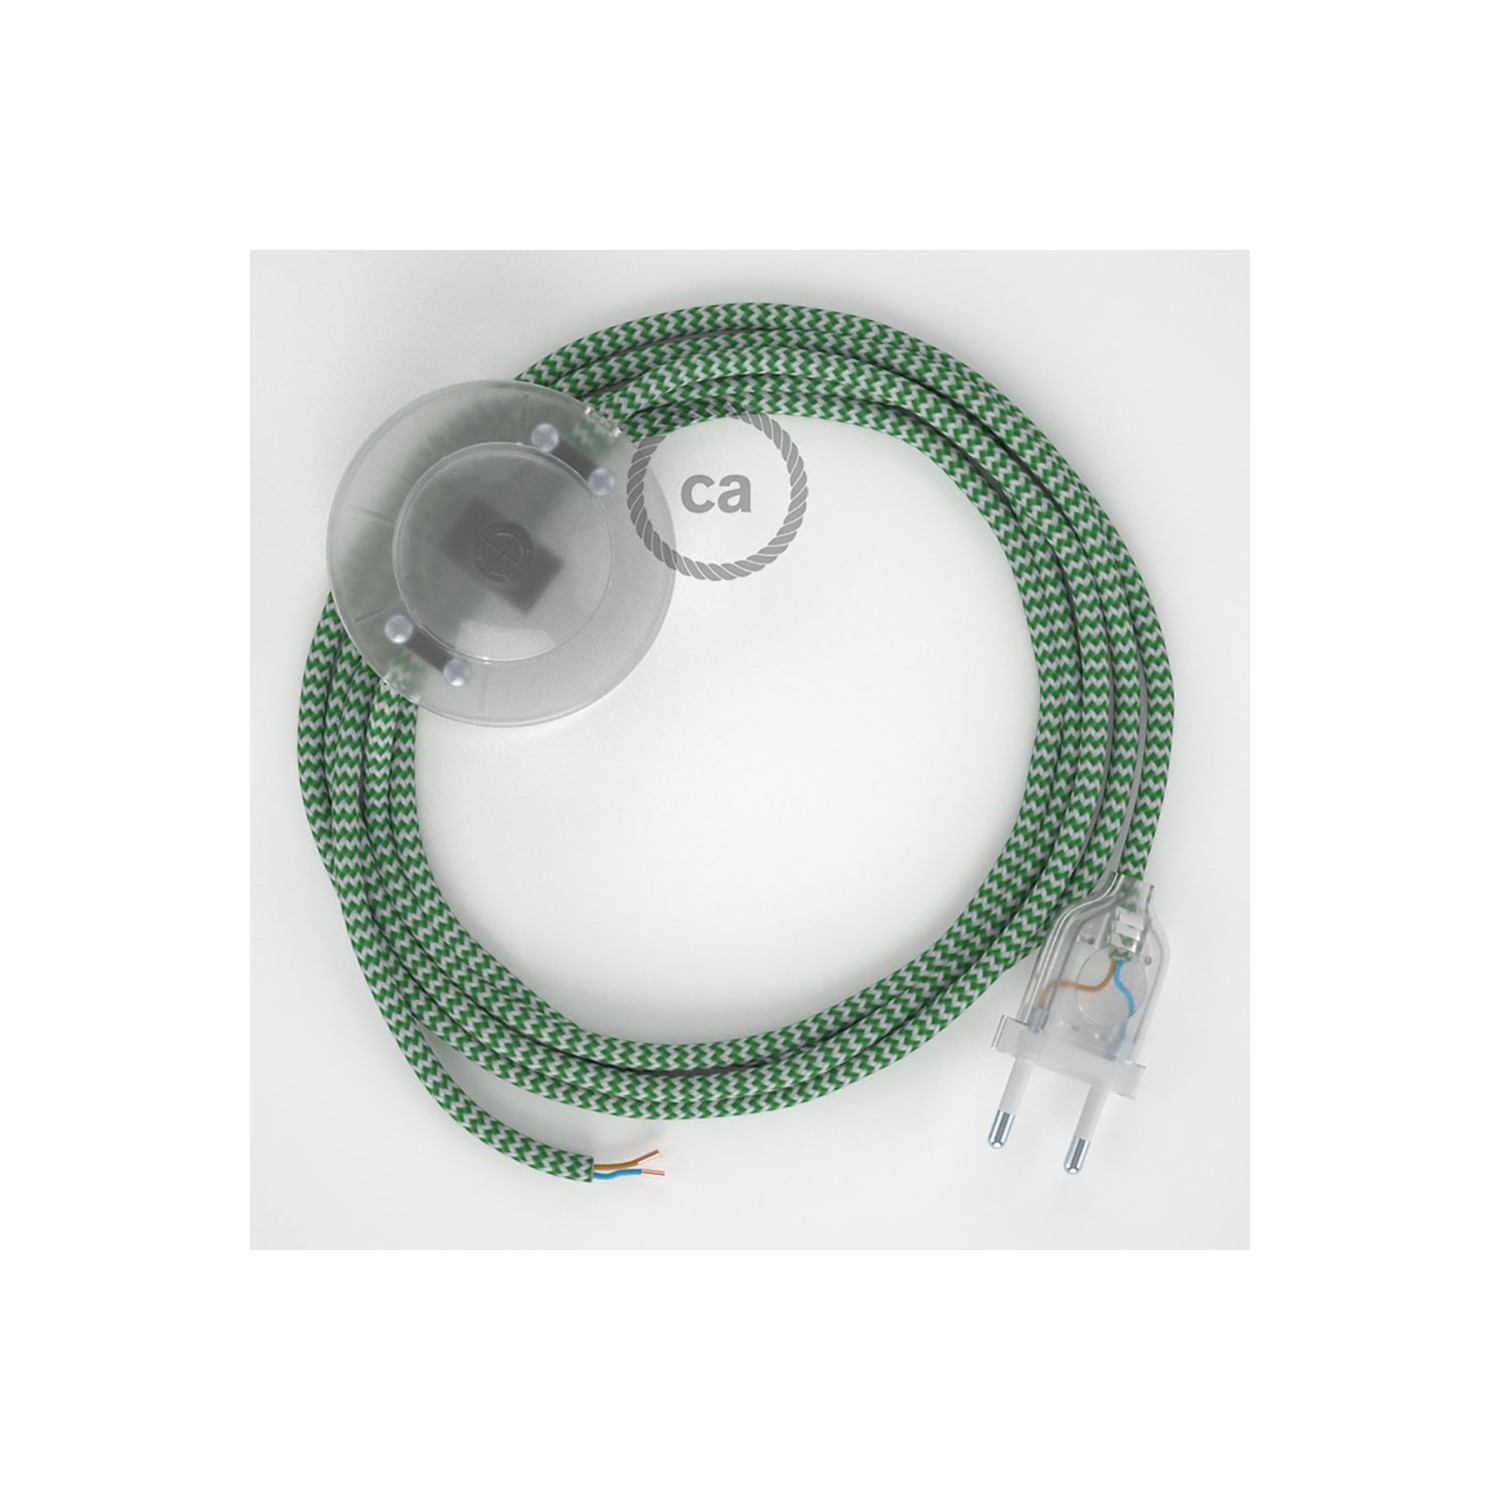 Stehleuchte Anschlussleitung RZ06 Zick-Zack Weiß Grün Seideneffekt 3 m. Wählen Sie aus drei Farben bei Schalter und Stecke.